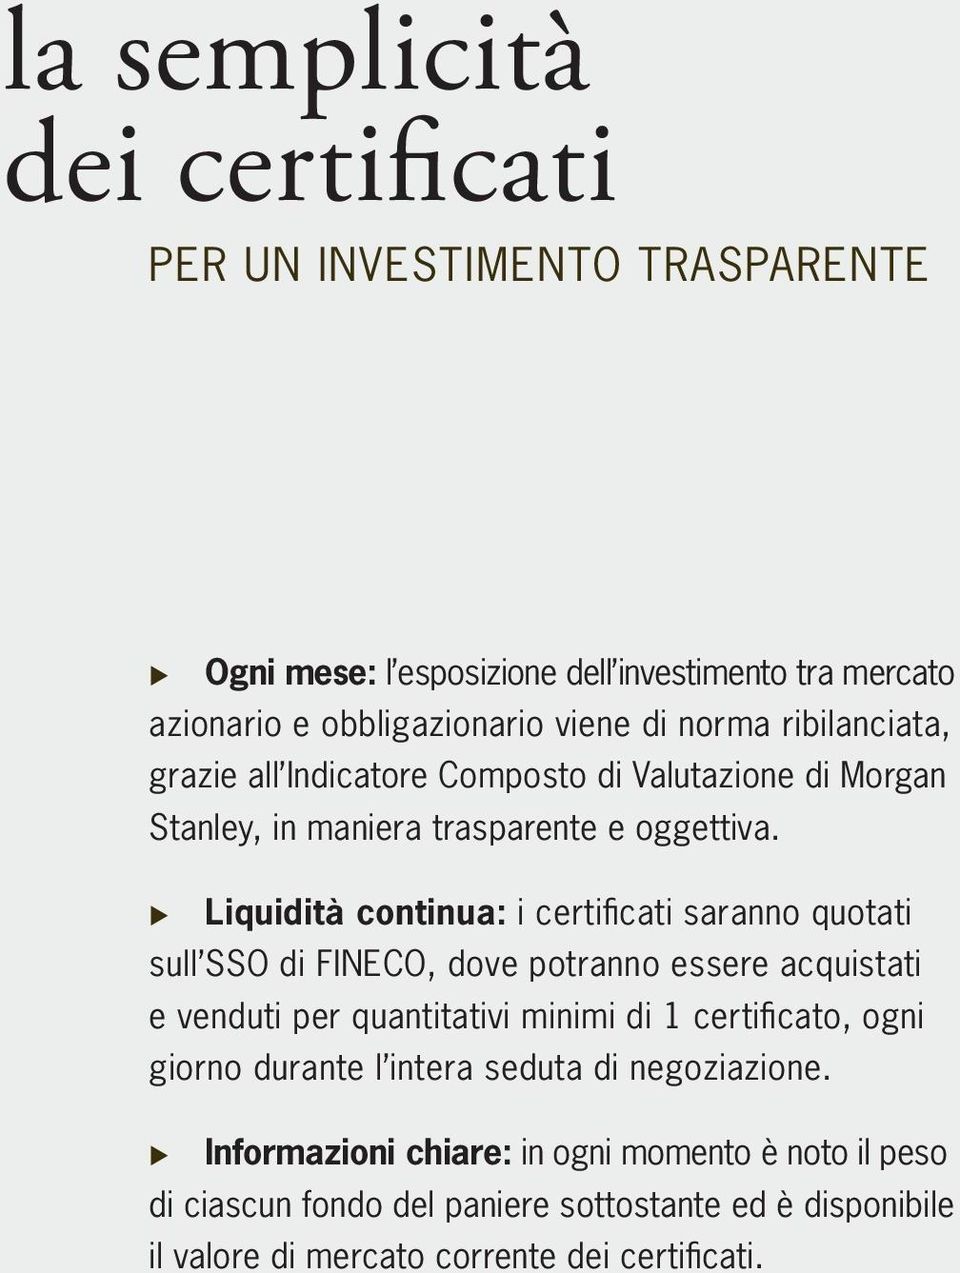 Liquidità continua: i certifi cati saranno quotati sull SSO di FINECO, dove potranno essere acquistati e venduti per quantitativi minimi di 1 certifi cato, ogni